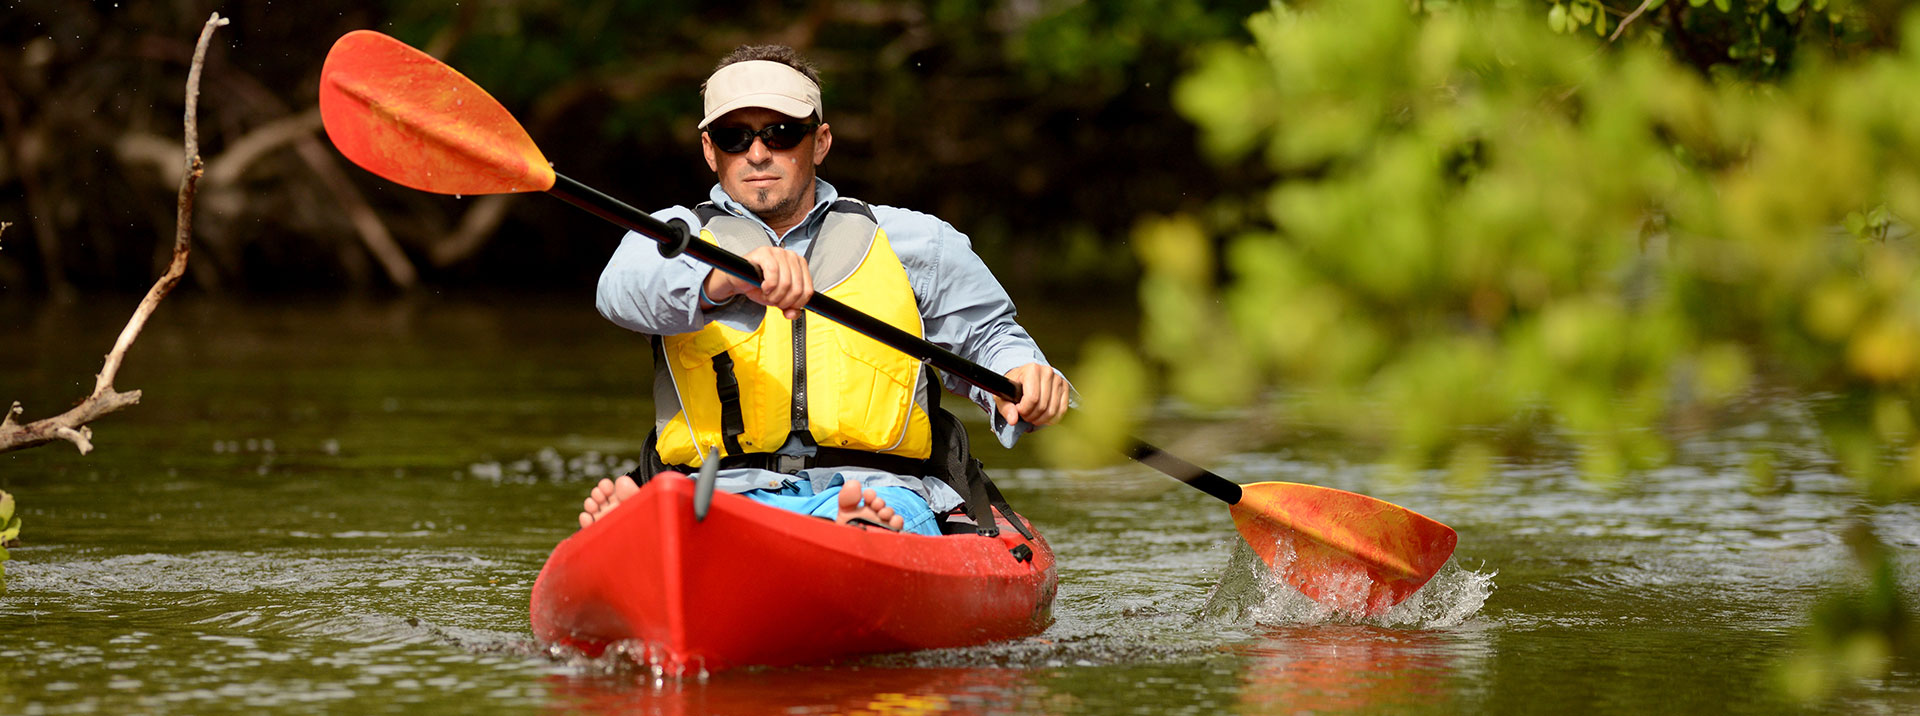 Man in orange kayak on river